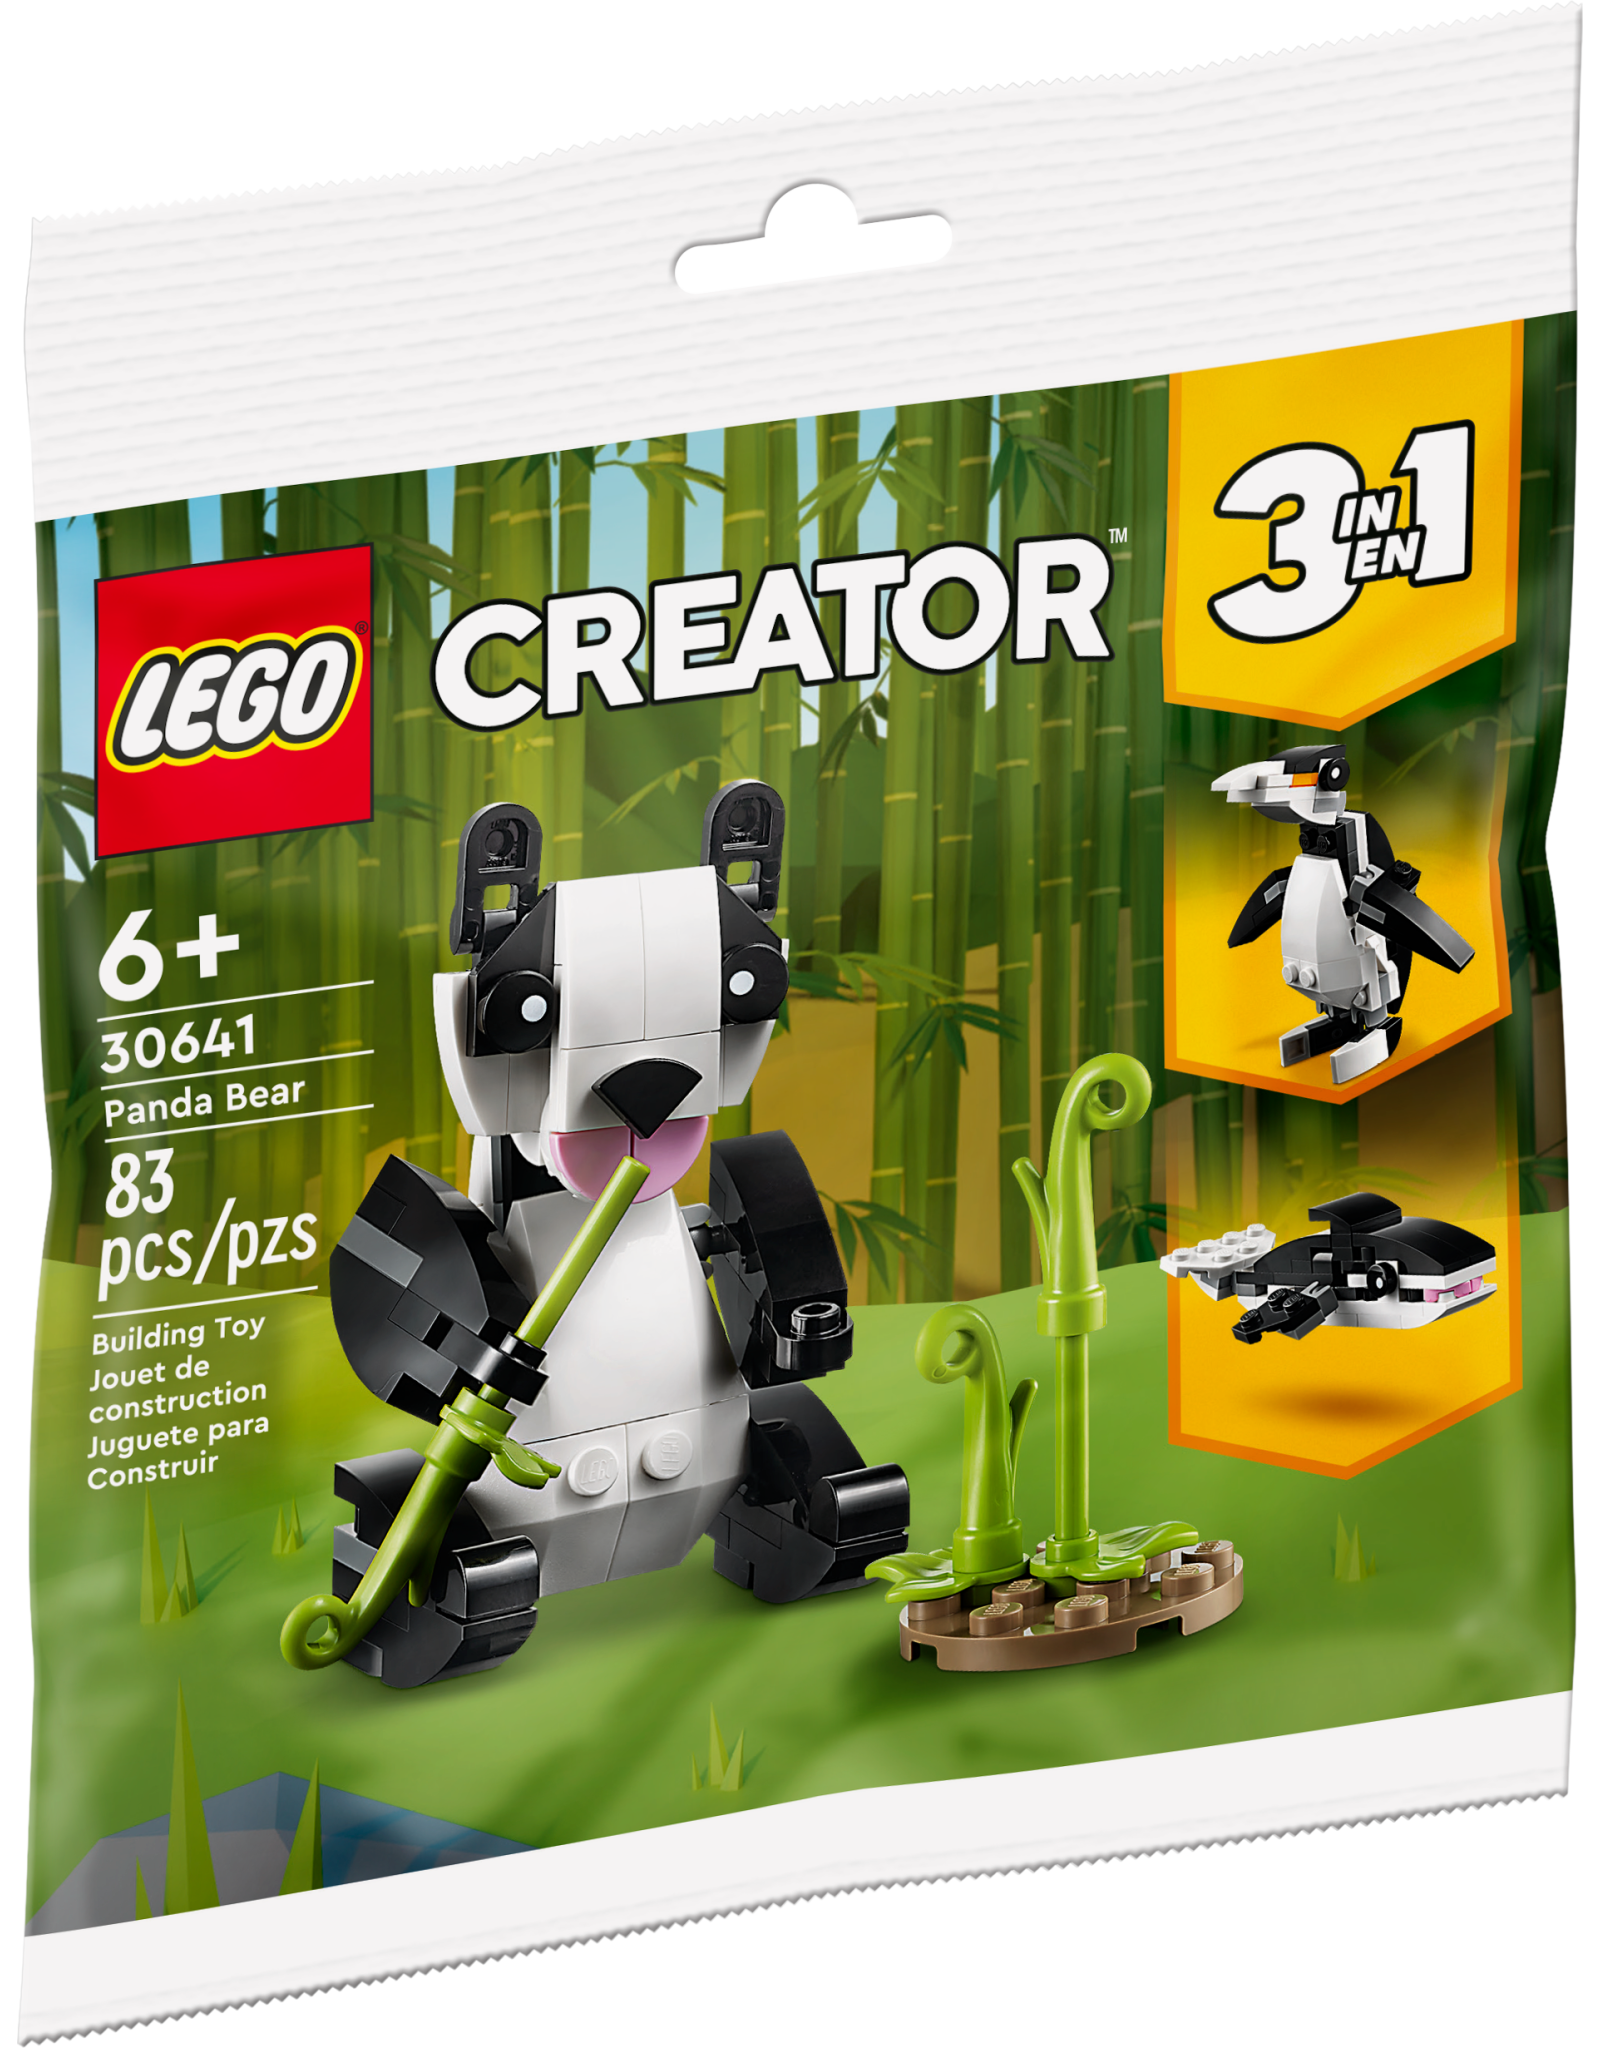 LEGO Creator 30641 Panda Bear